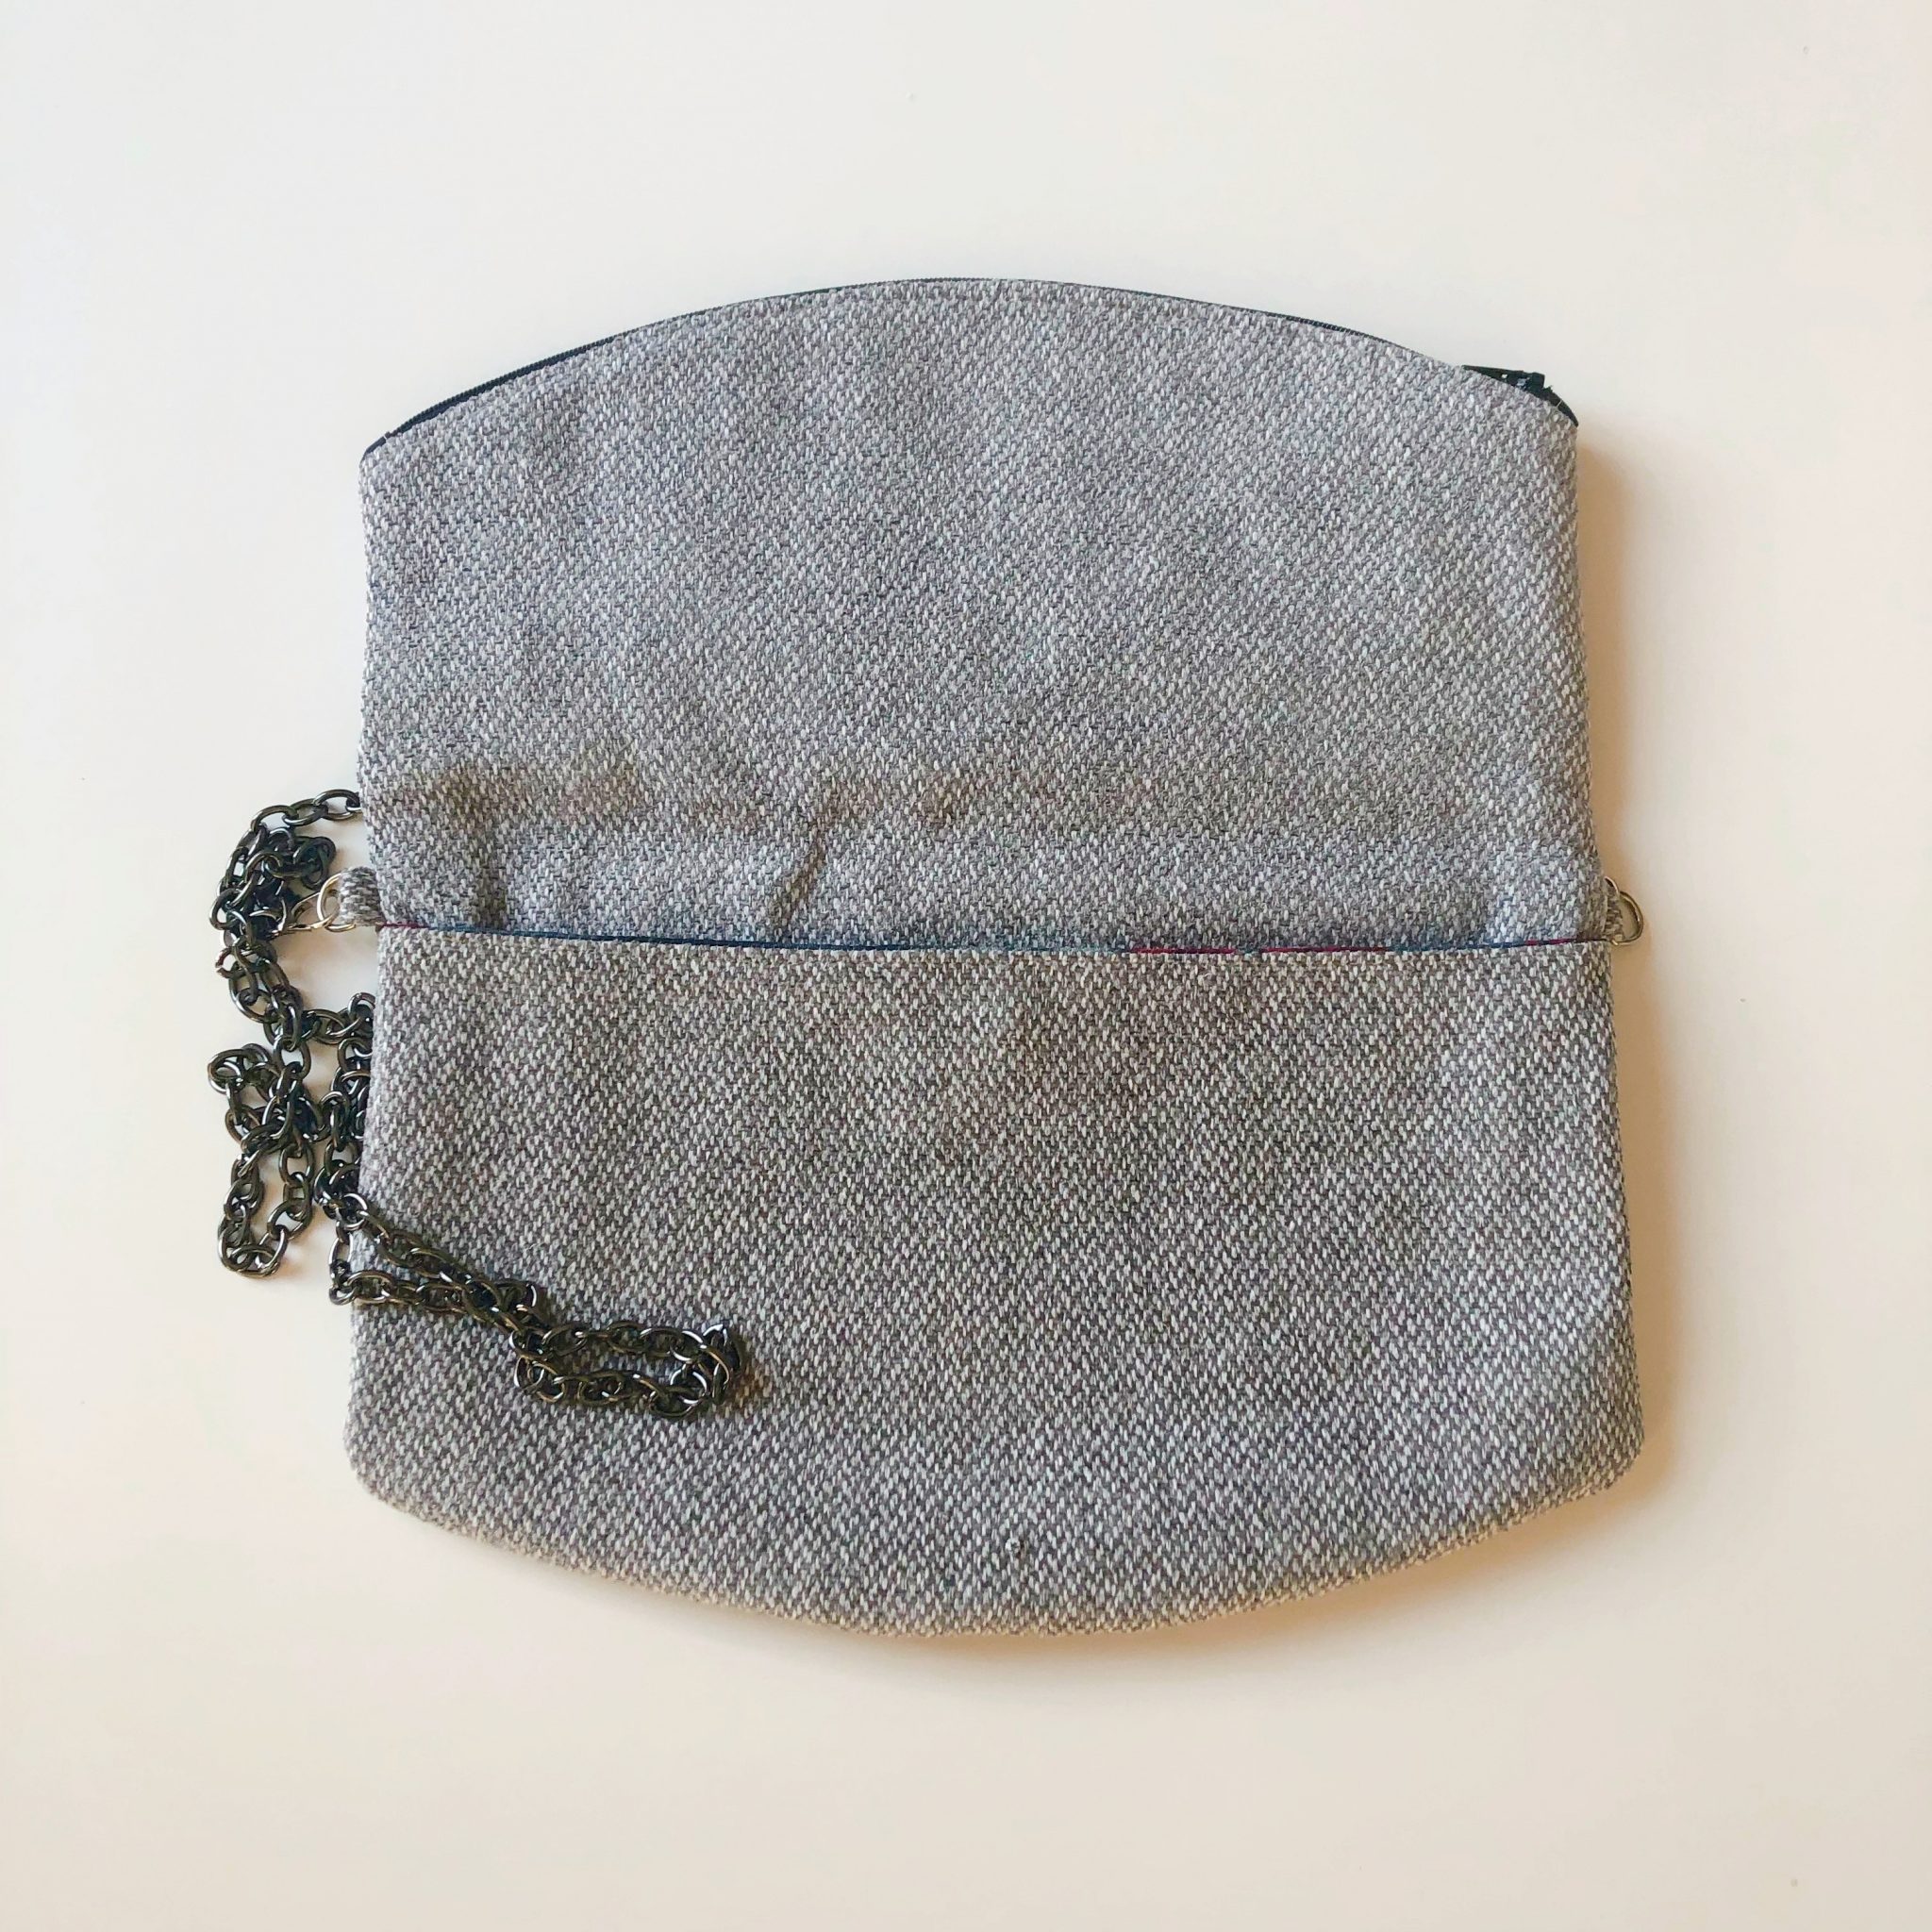 Sac bandoulière de la marque Bleu Souris - gris chiné et doré -sac bandoulière